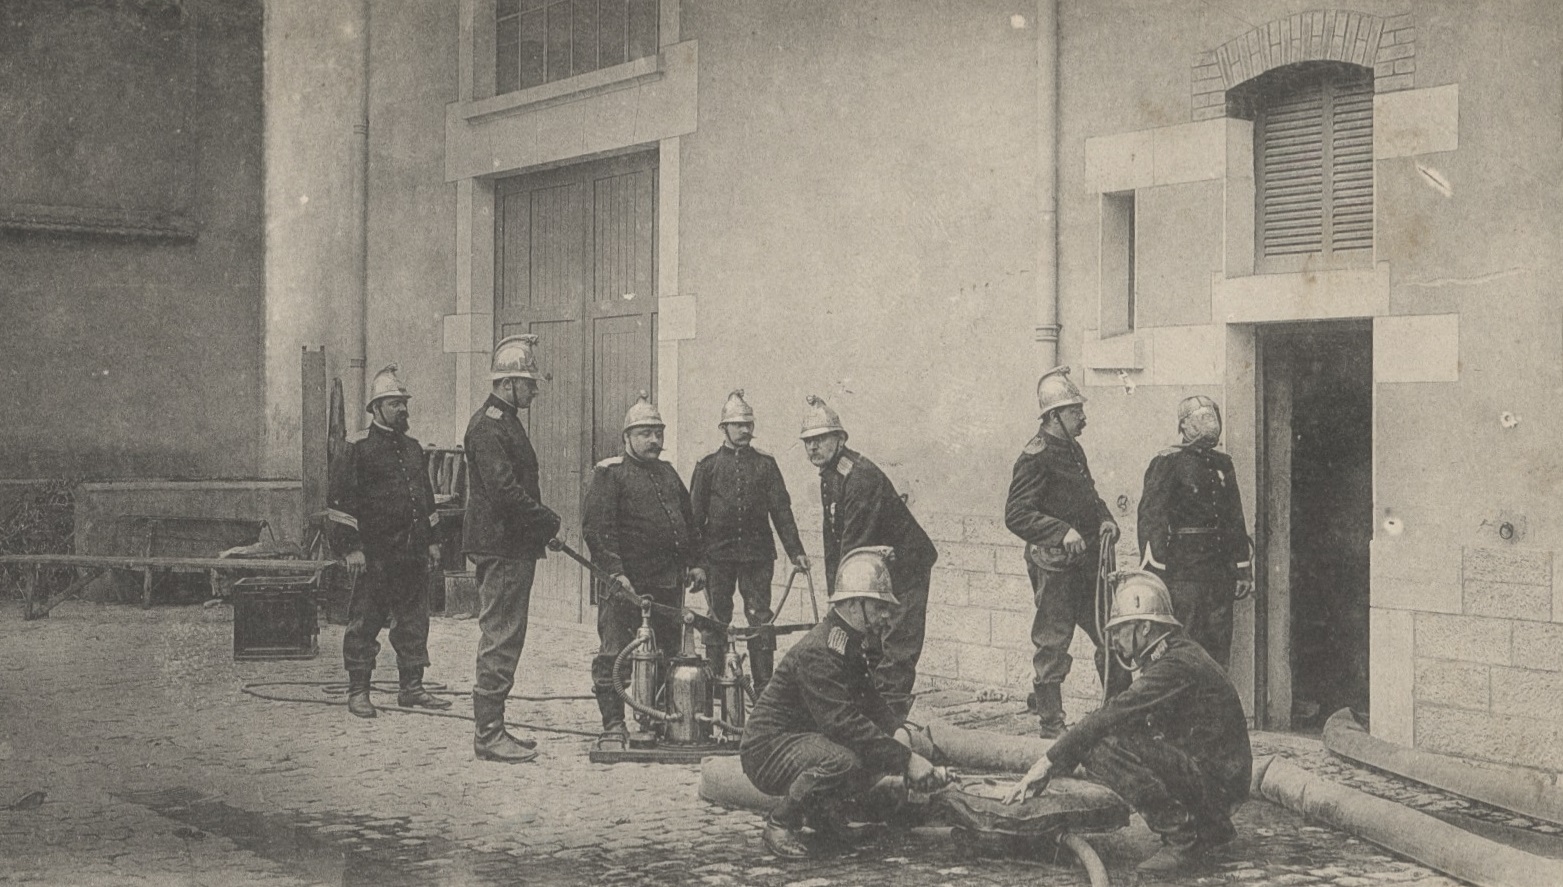 Lyon - Union des corps de sapeurs-pompiers de la région lyonnaise : carte postale NB (vers 1910, cote : 4FI/3976)